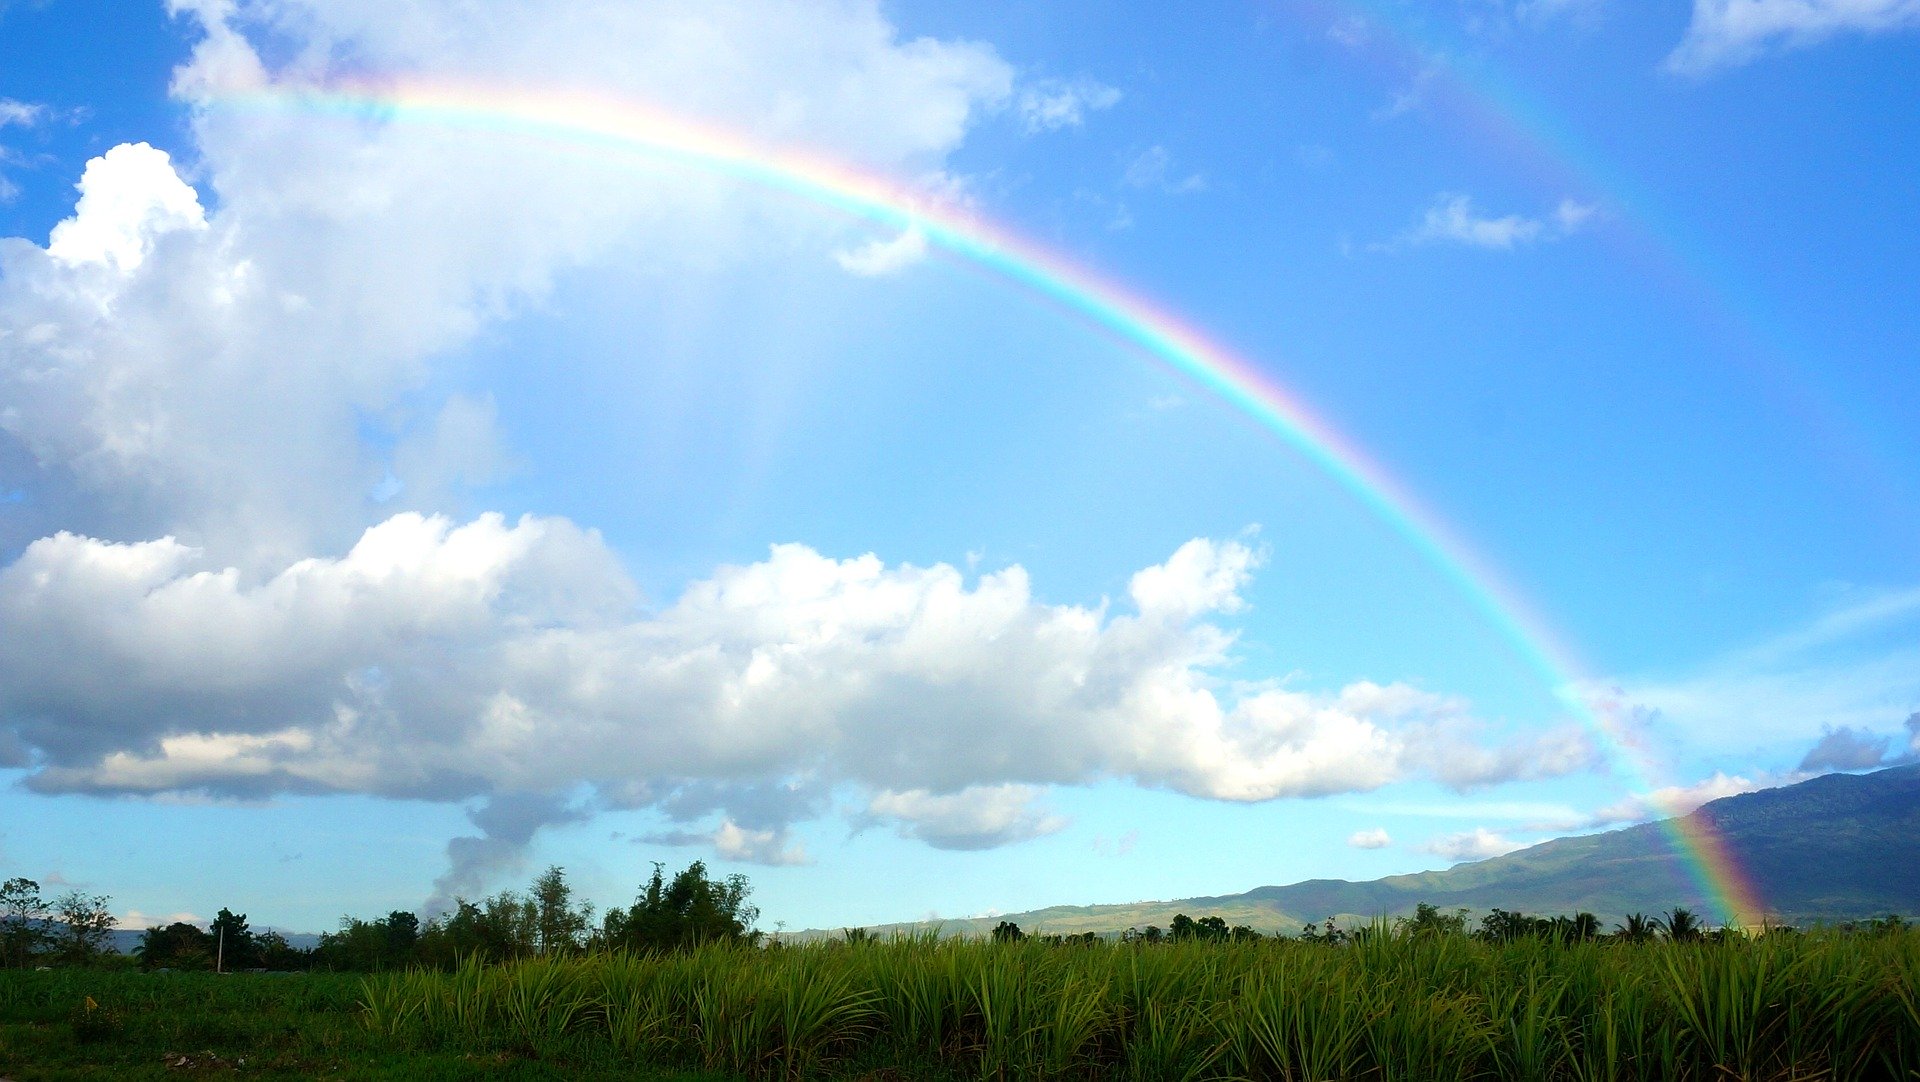 雨上がり には虹を探そう 虹を見るのがもっと楽しくなる豆知識 Lifeコラム Fuku Fukuウェブマガジン 株式会社イケダヤ 衣料品 雑貨の販売 浜松市